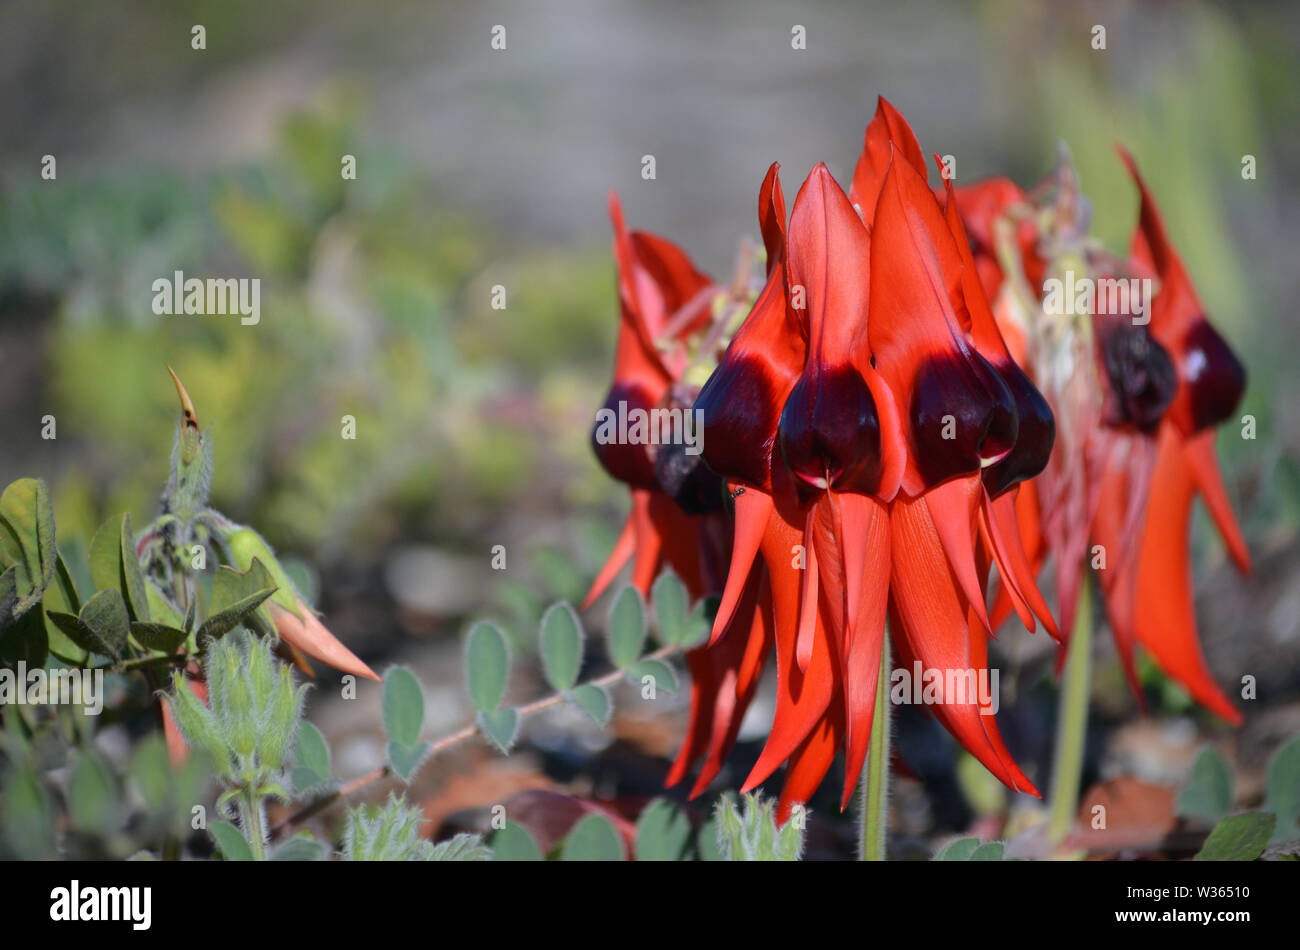 Sturts australienne fleurs pois du désert, Swainsona formosa, famille des Fabaceae. Emblème floral de l'Australie du Sud. Banque D'Images